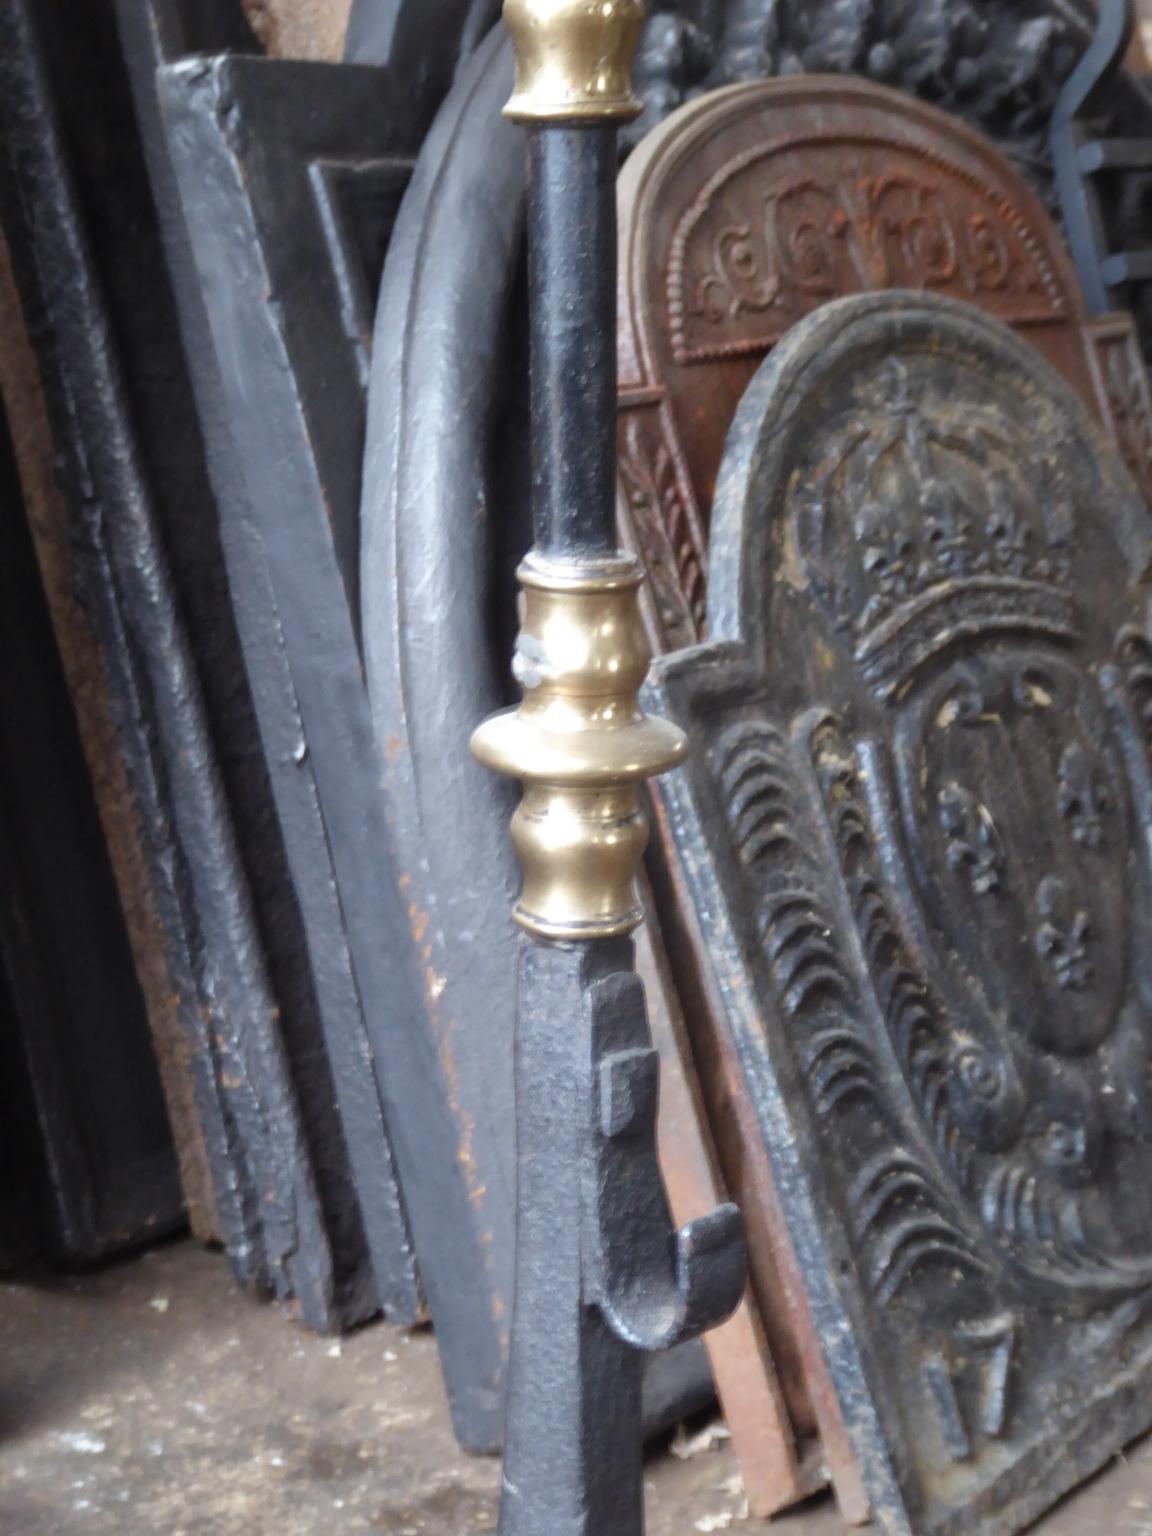 Feuerrost aus dem 16. bis 17. Jahrhundert aus der französischen Renaissance. Aus schön geschmiedetem Schmiedeeisen und Bronze. Der Zustand ist gut.

Die Breite an der Vorderseite beträgt 93 cm (36,6 Zoll).

Dieses Produkt muss aufgrund seiner Größe